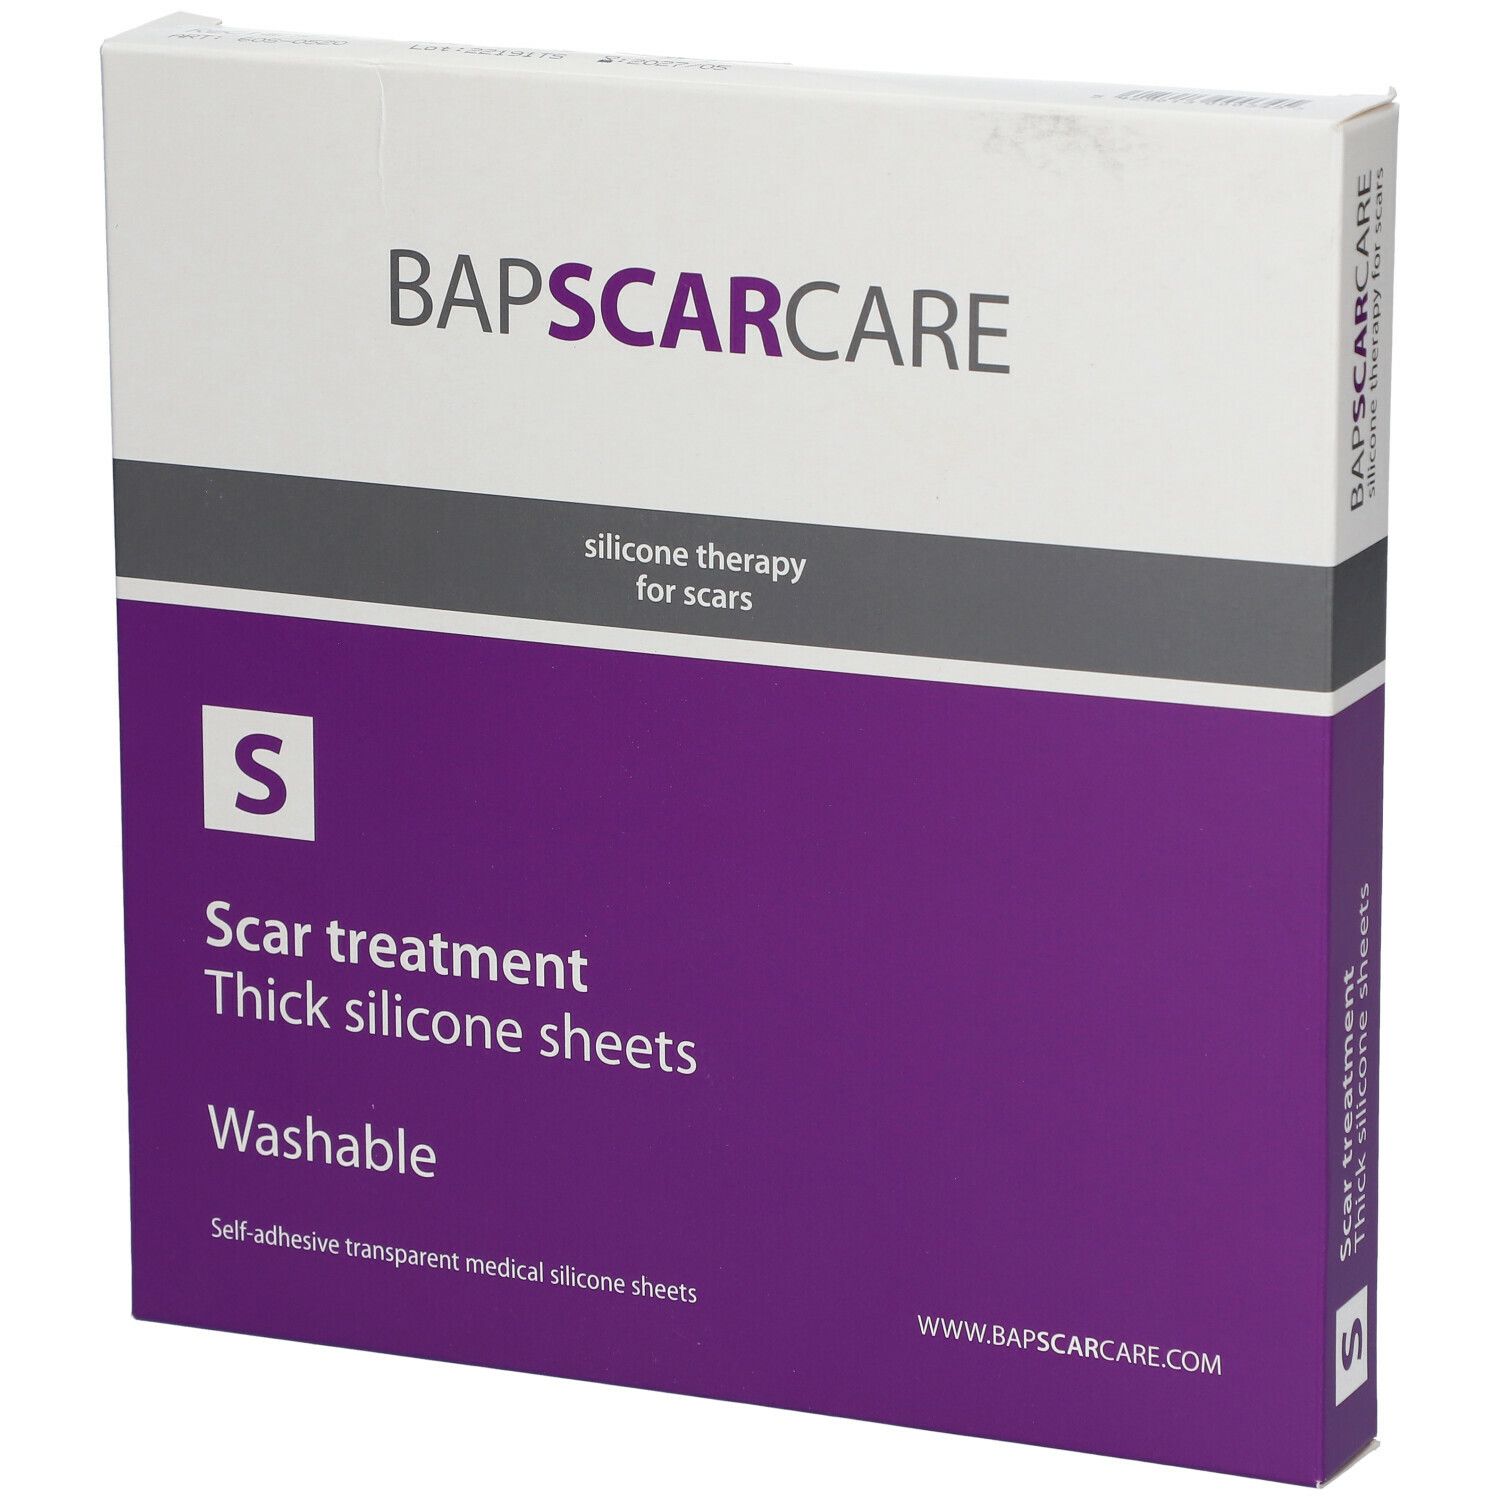 BAP SCAR CARE S Pansement lavable pour cicatrices Rectangle 5 x 20 cm 2  pc(s) - Redcare Pharmacie